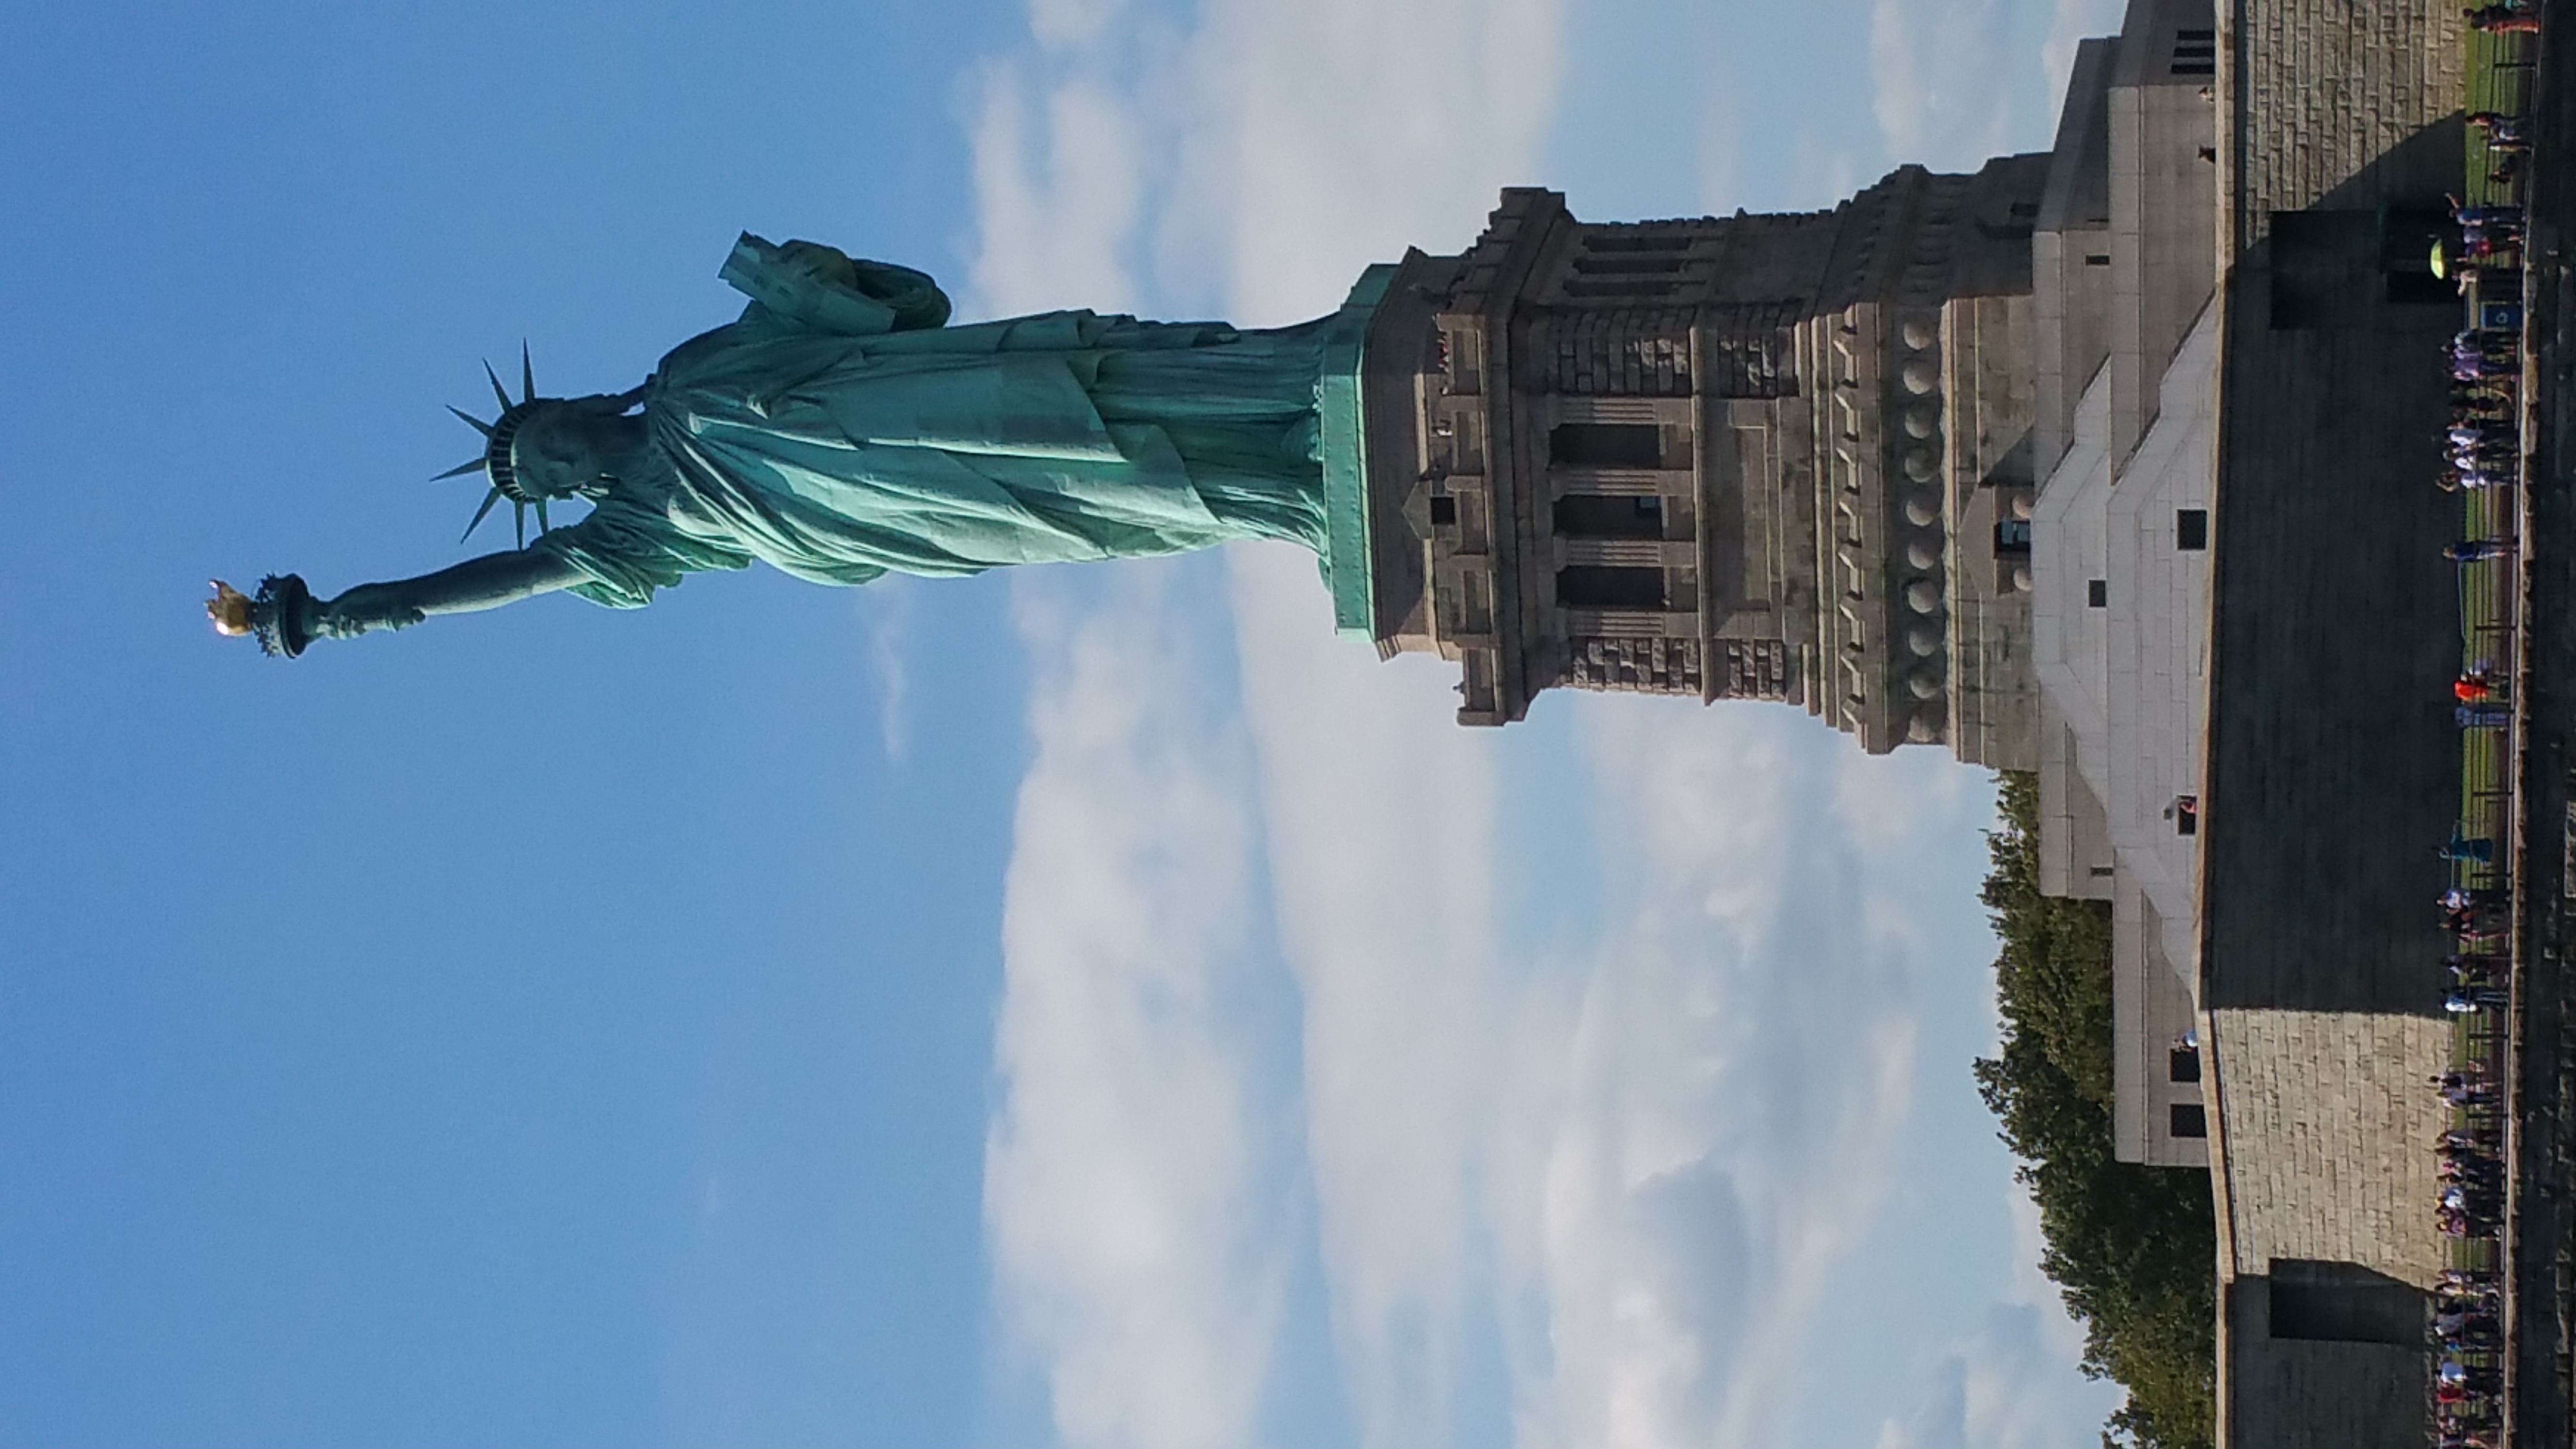 Статуя свободы в сша фото